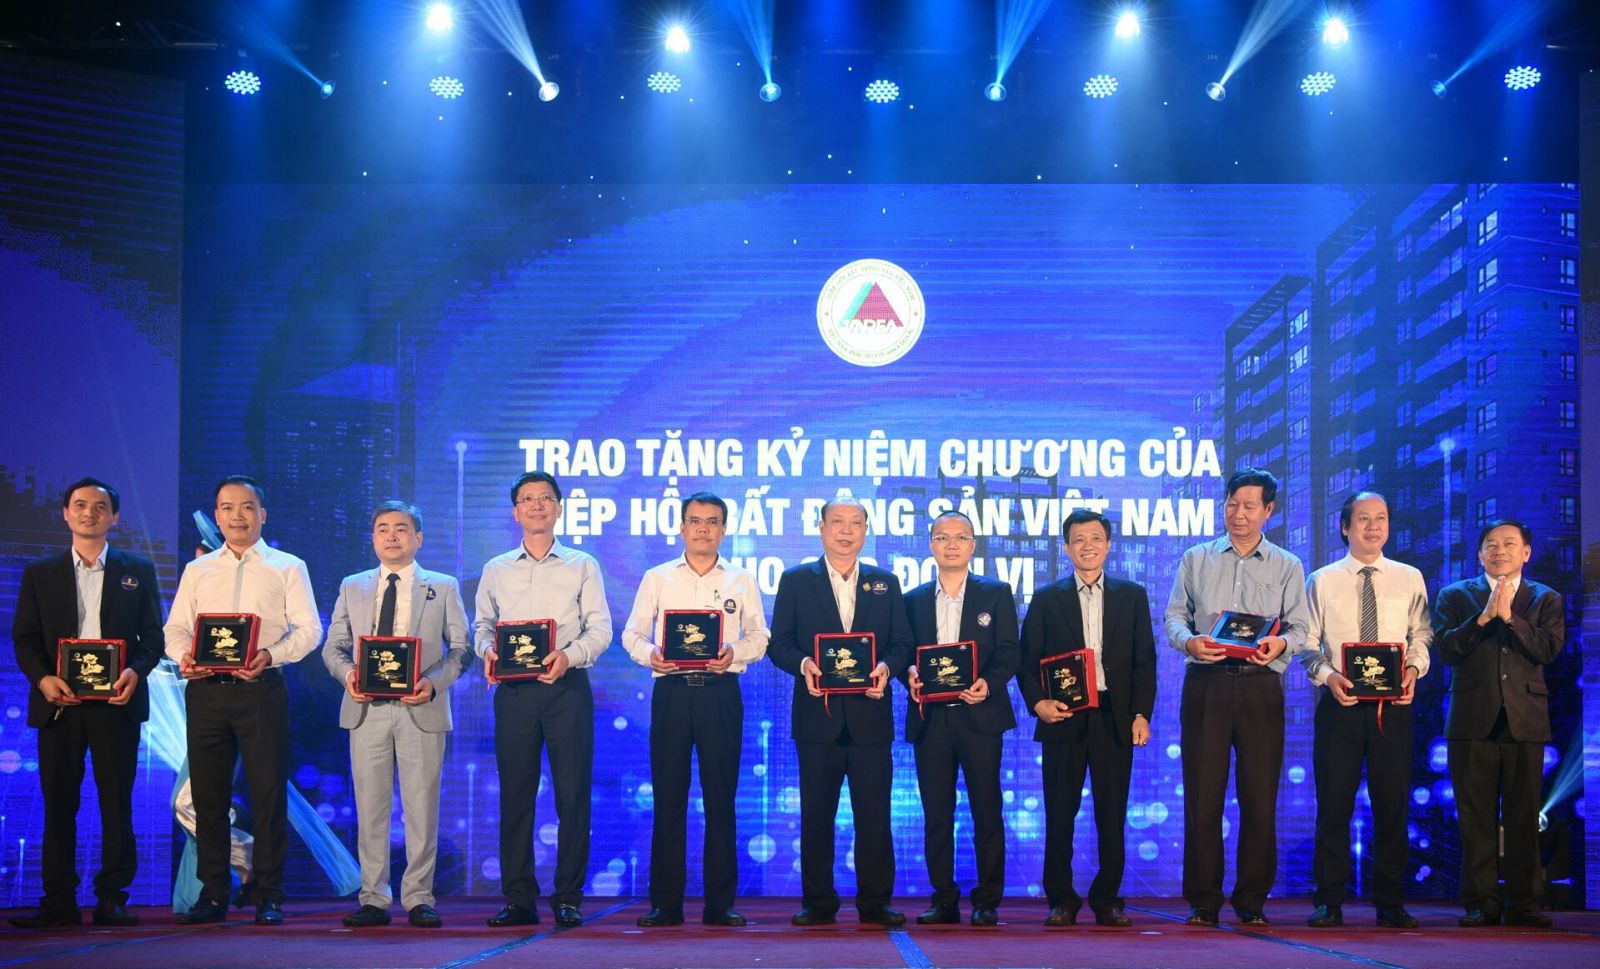 Nghi thức trao tặng kỷ niệm chương của Hiệp hội Bất động sản Việt Nam cho